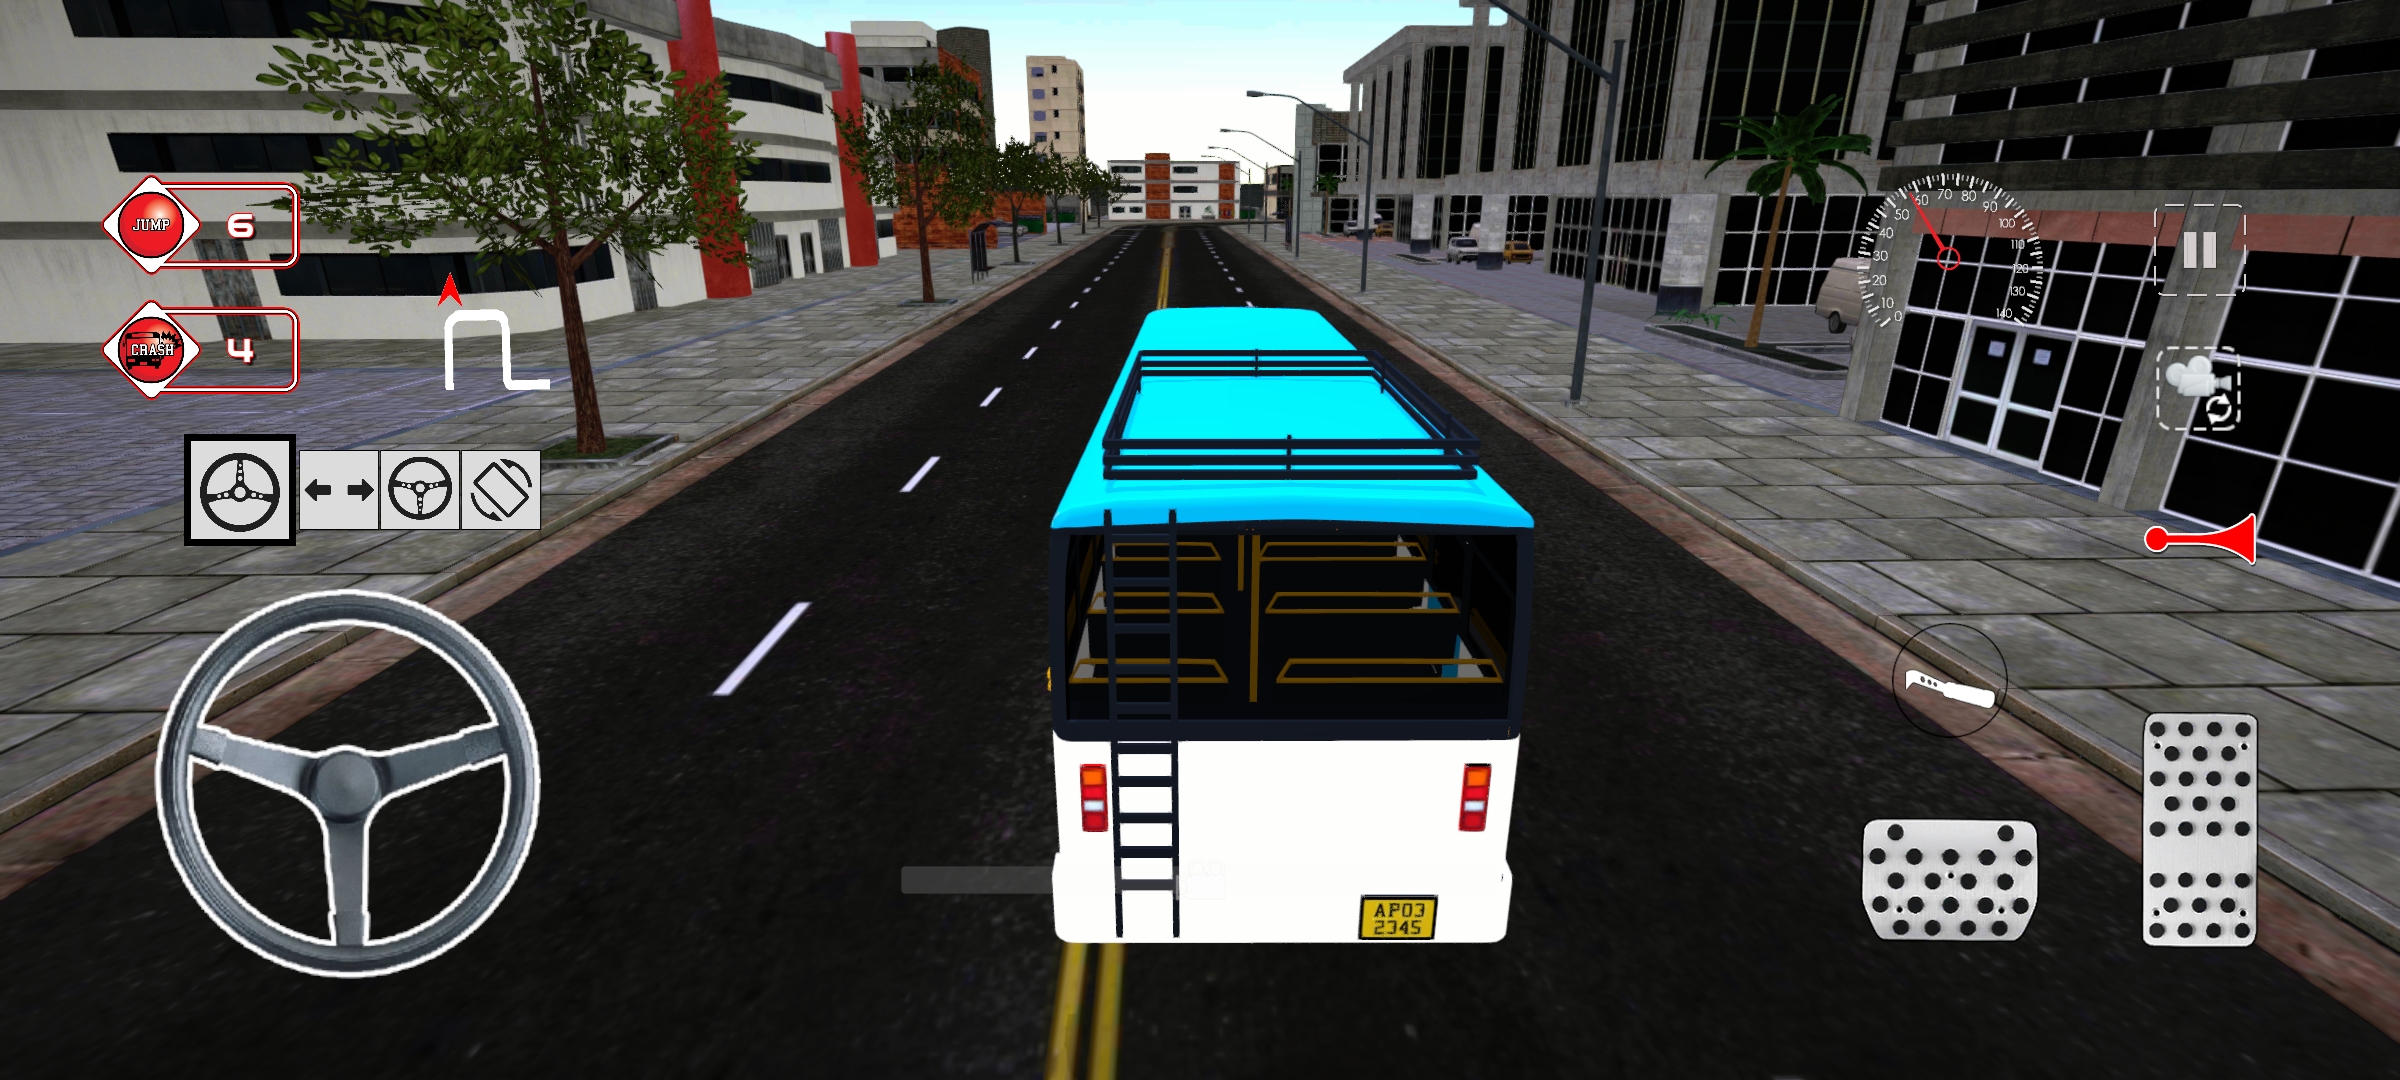 印度巴士模拟最新版截图1